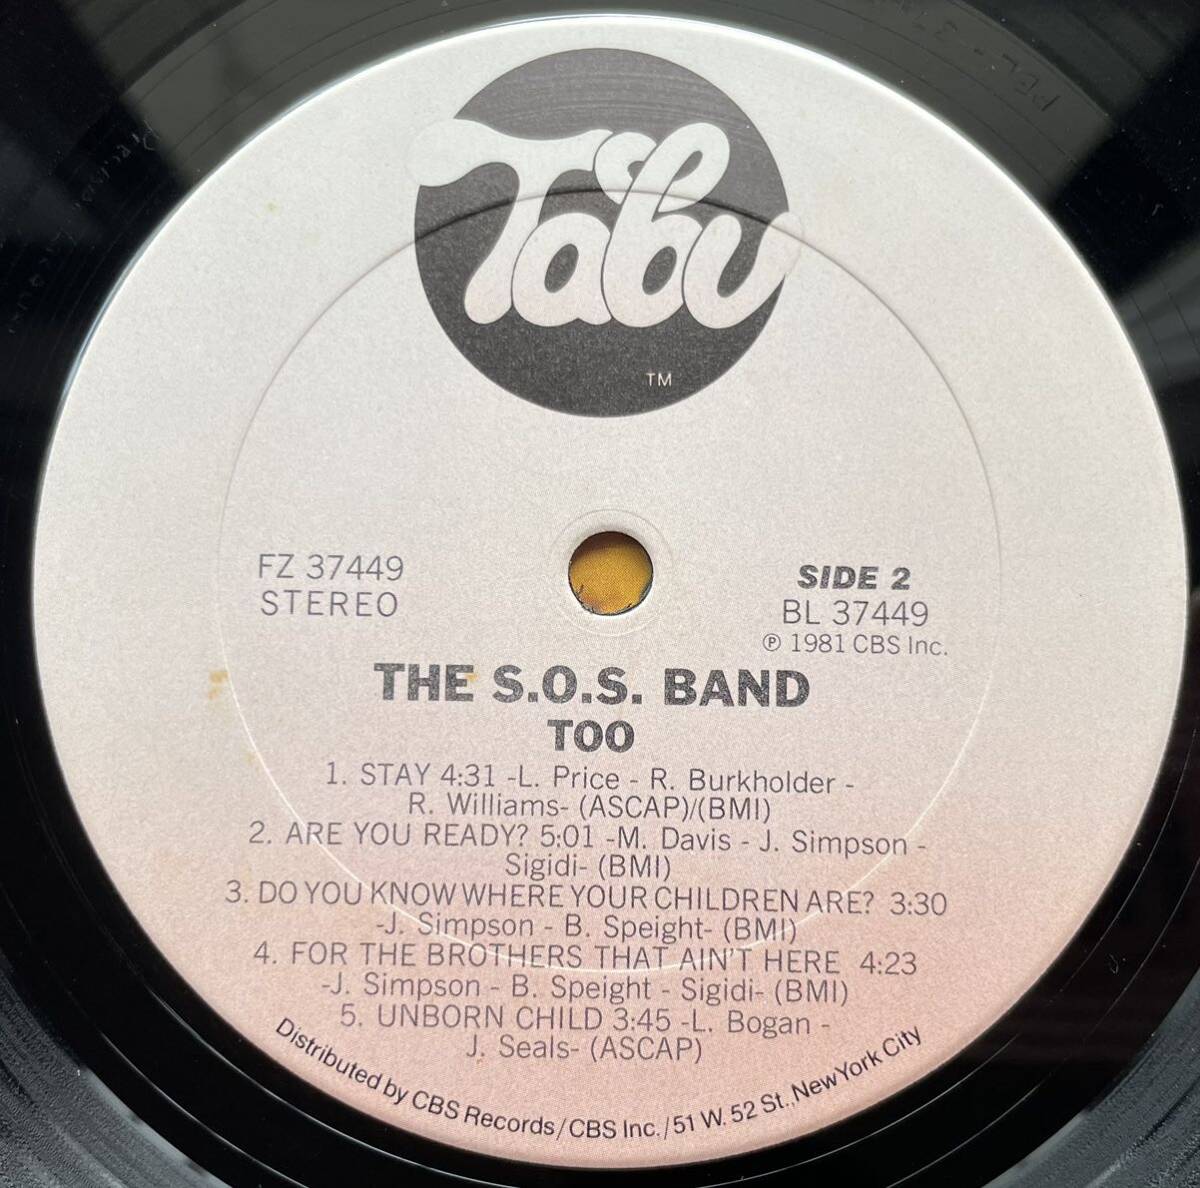 S.O.S. Band / The S.O.S. Band Tooアルバム12inch盤その他にもプロモーション盤 レア盤 人気レコード 多数出品。_画像4